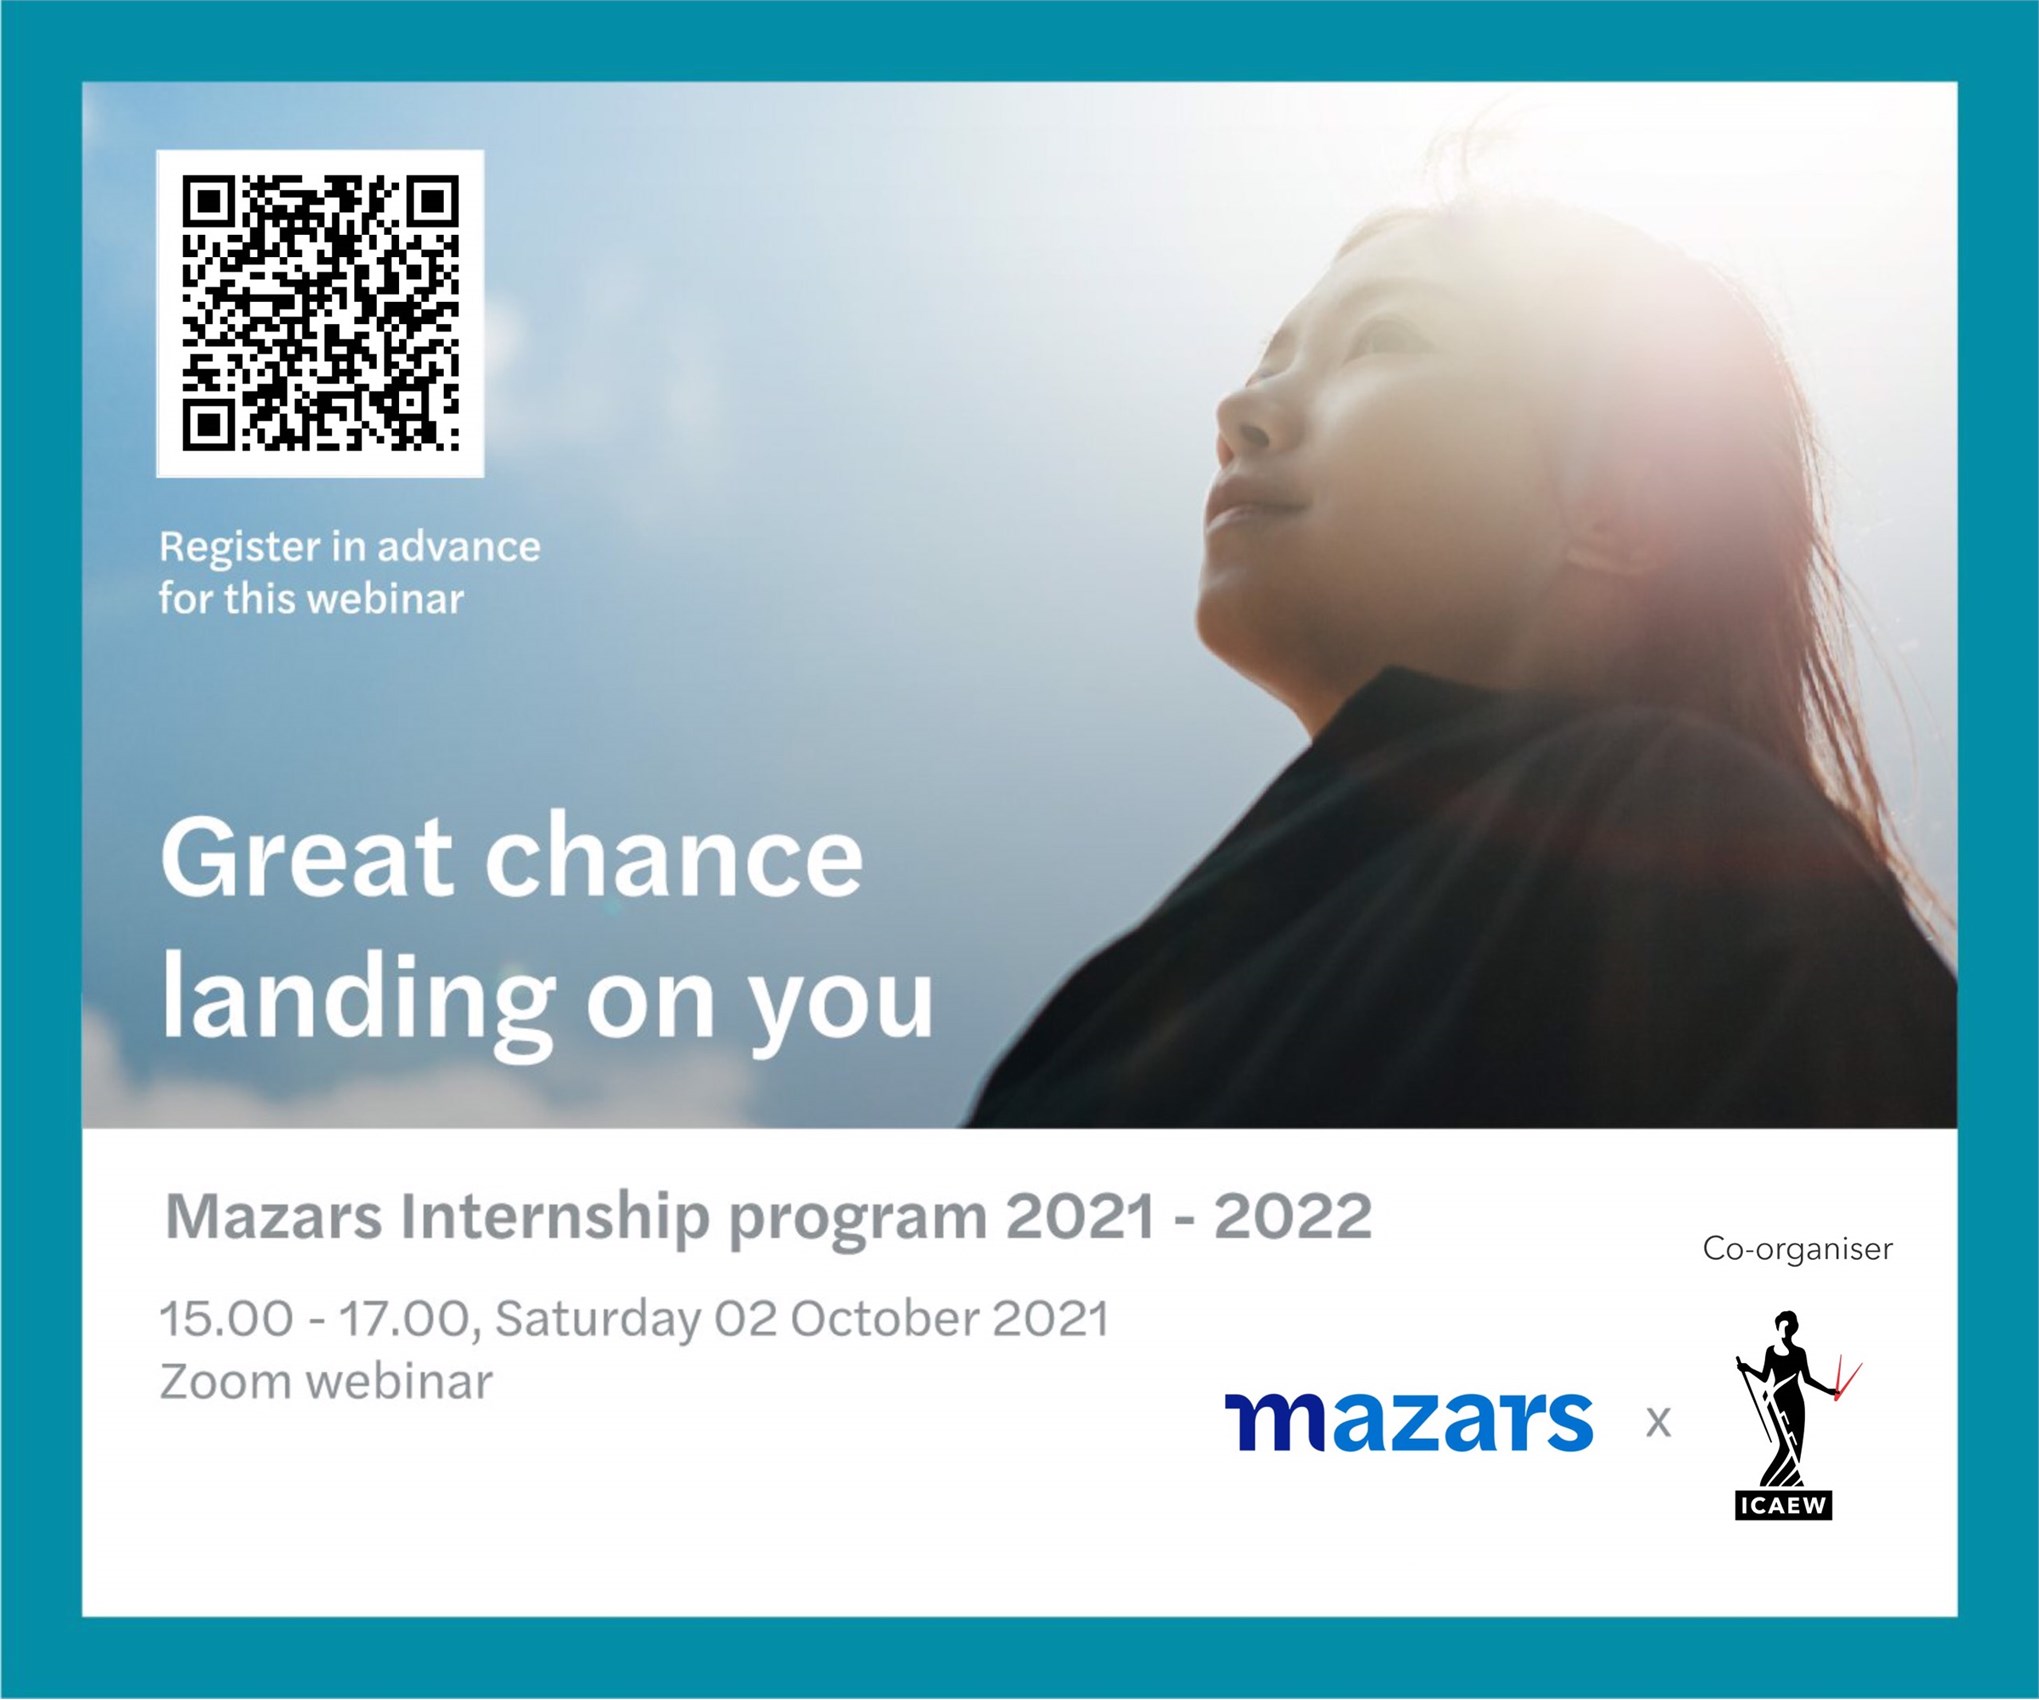 Hội thảo trực tuyến về cơ hội nghề nghiệp cho SV tại Mazars “Great chance landing on you”